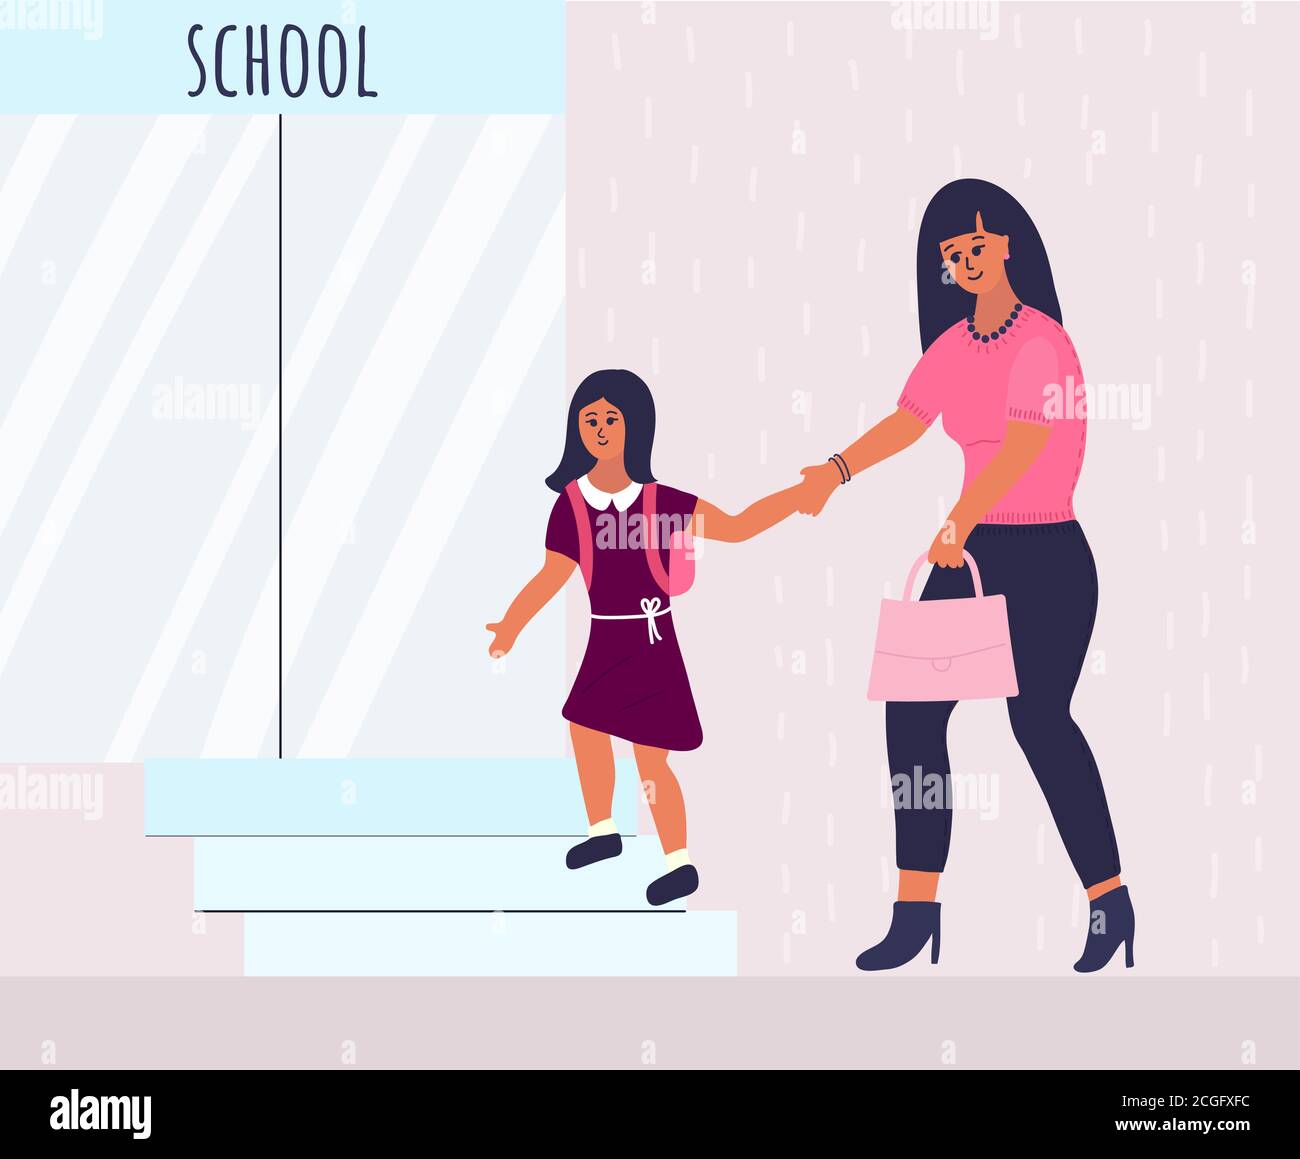 madre e figlia vanno a scuola. madre bruna in jeans blu conduce una bambina in un abito di maroon e una cintura bianca dalla mano. Illustrazione Vettoriale